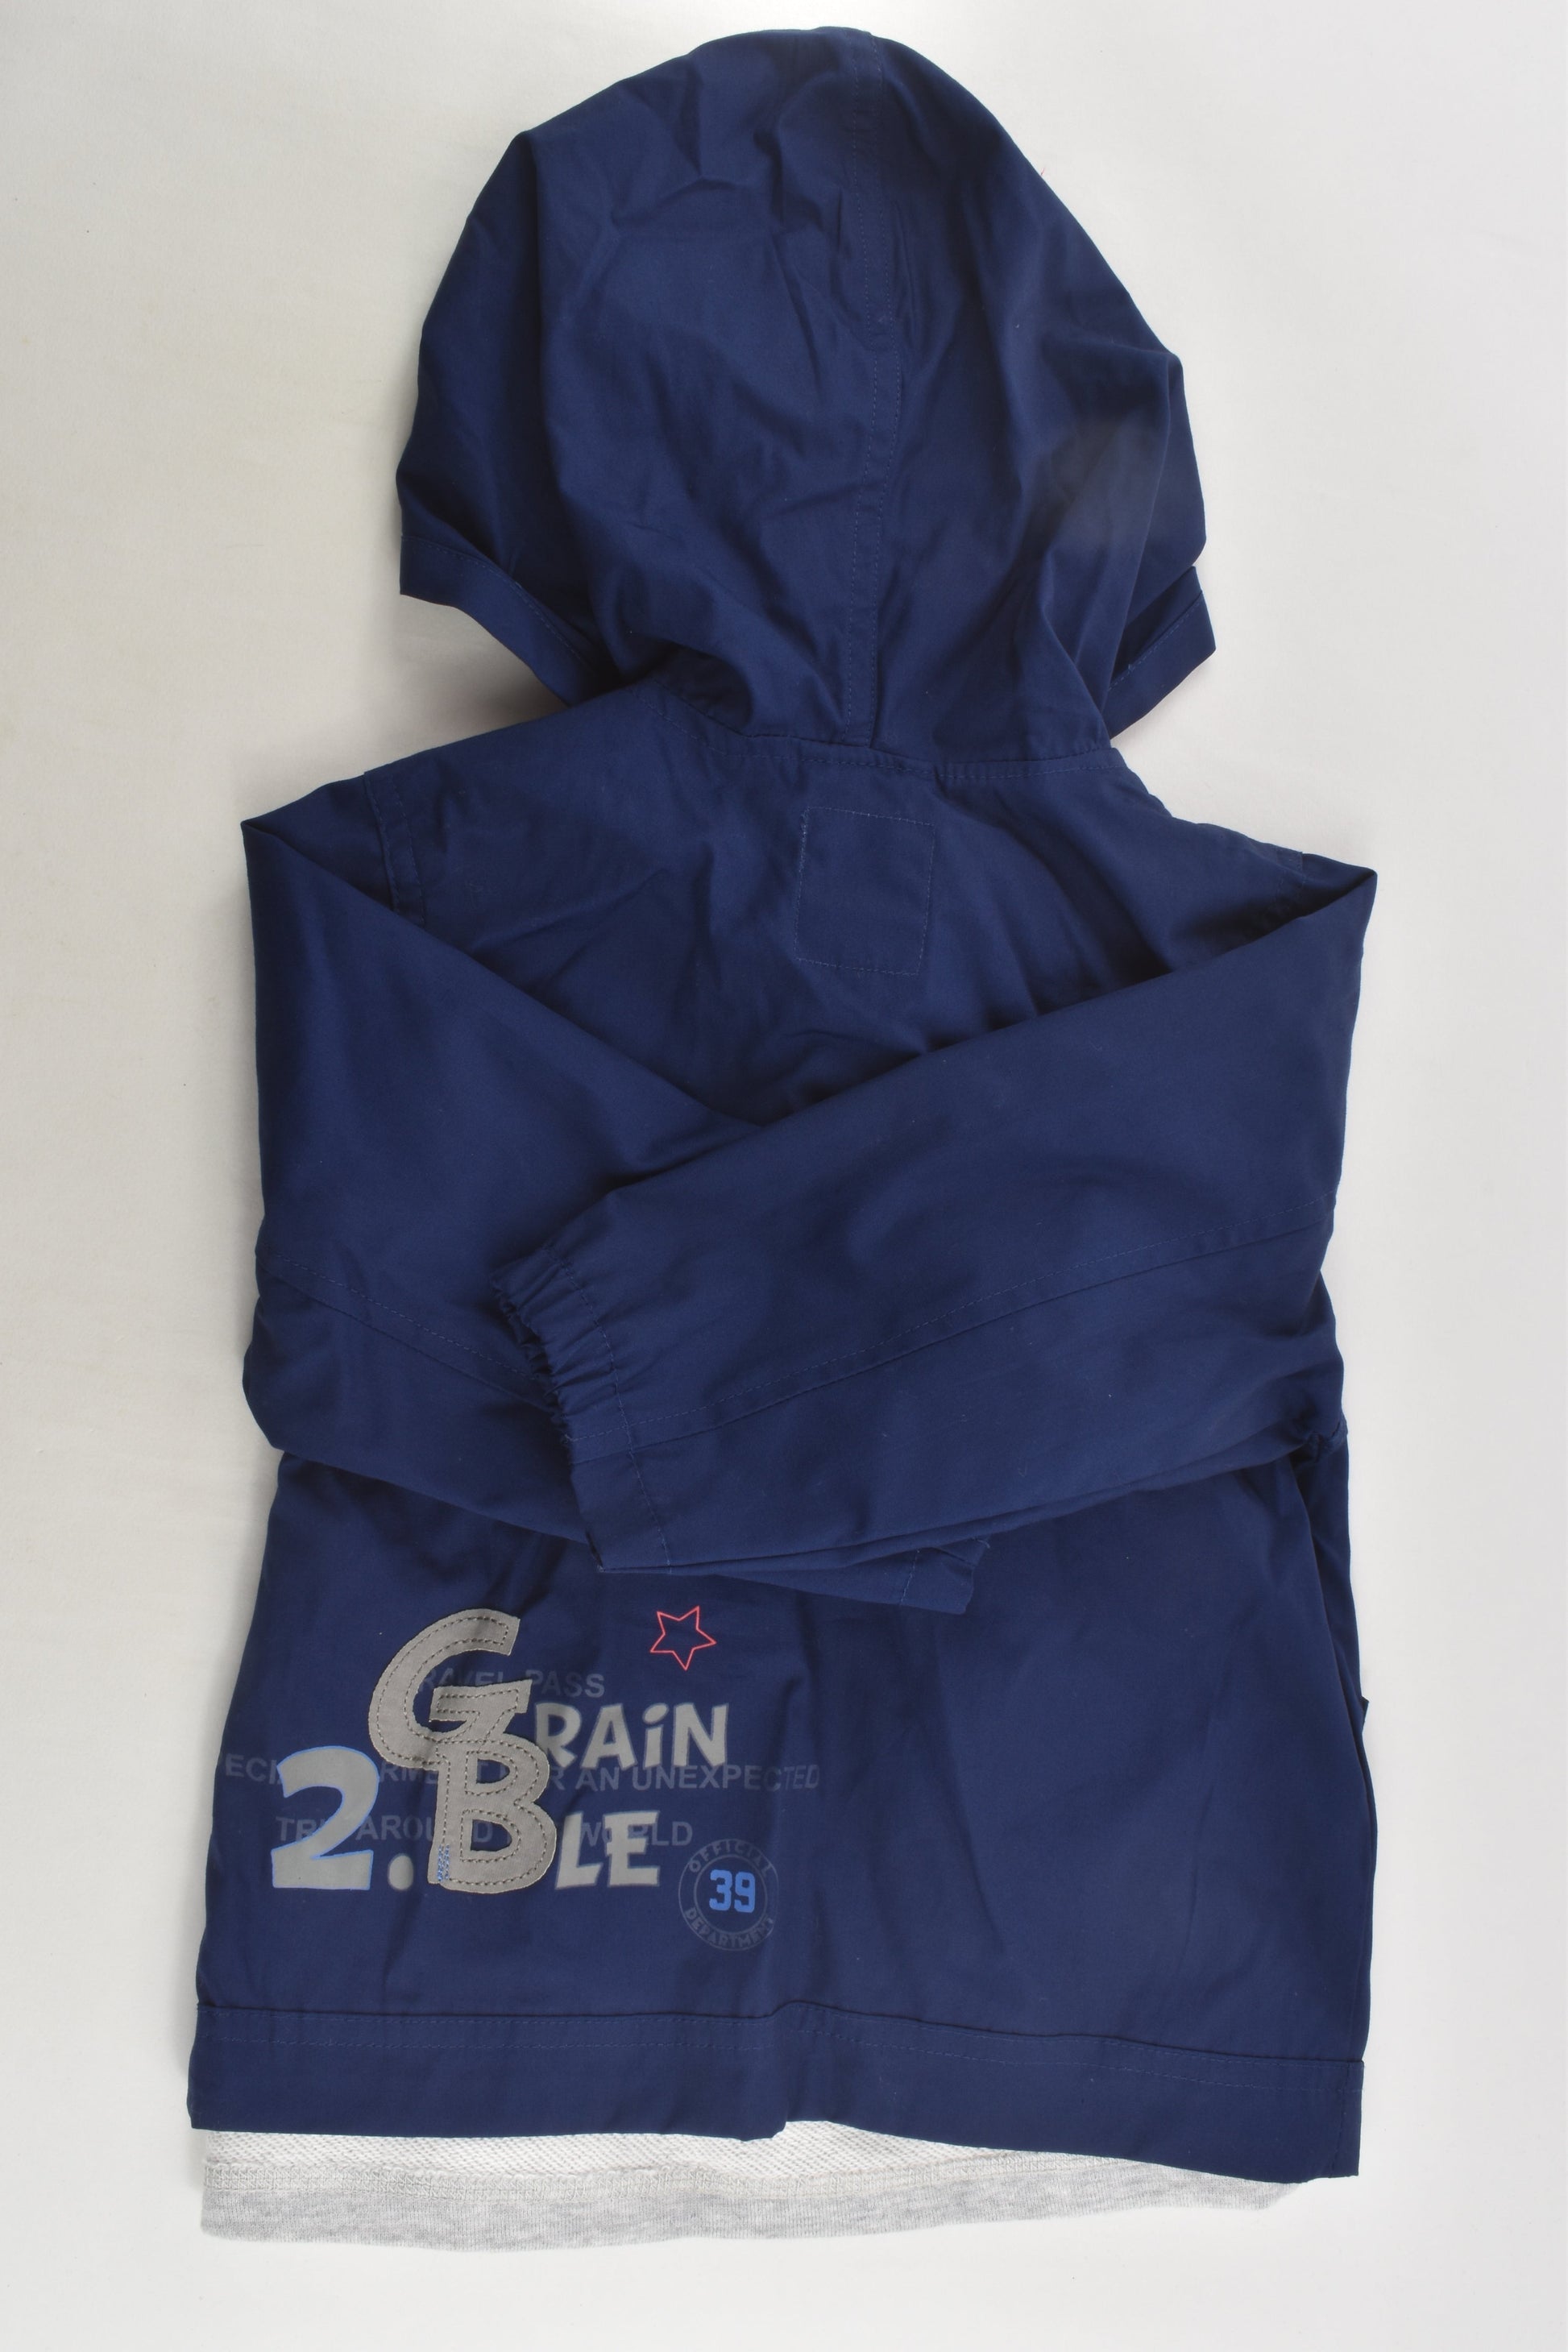 Grain De Blé Size 1 (86 cm, 24 months) Jacket with Removable Lining